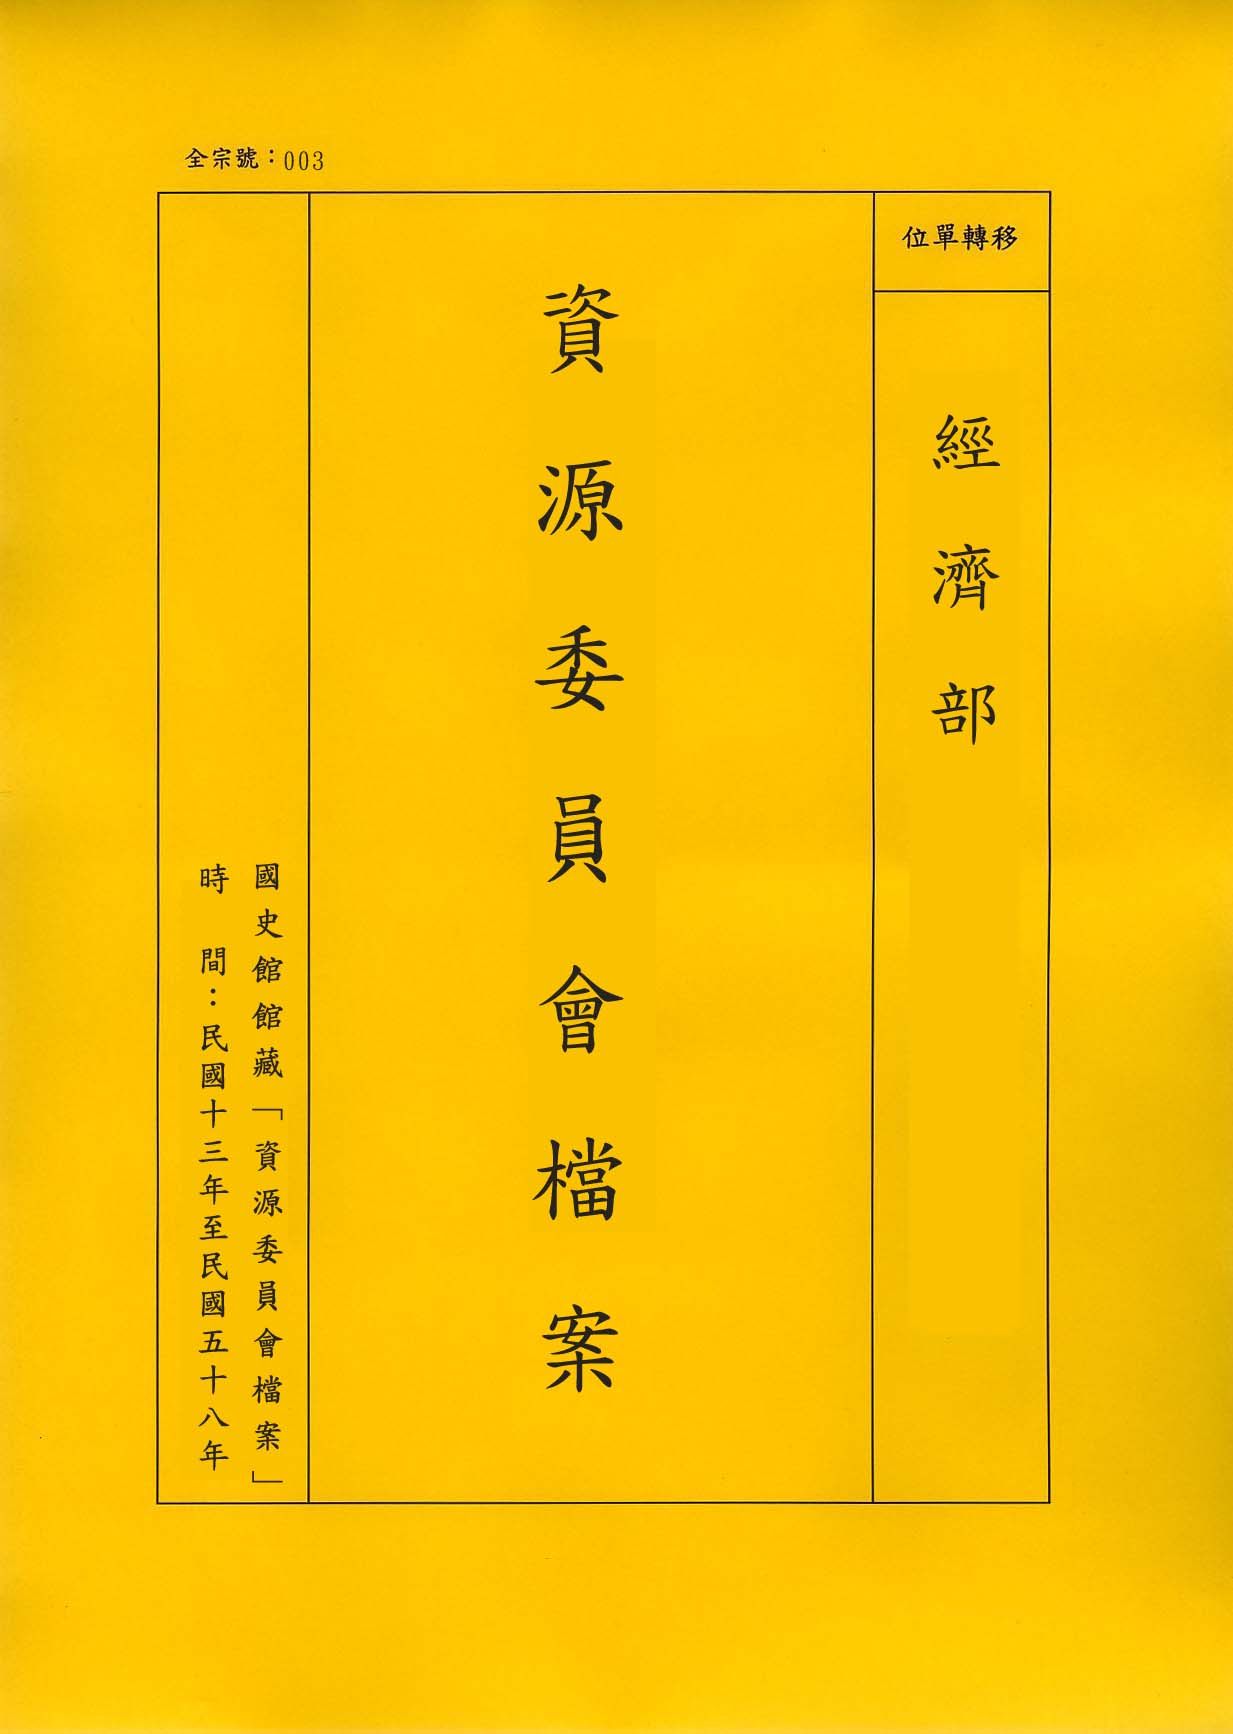 卷名:文具雜項工廠調查表─上海(003-010306-0073)